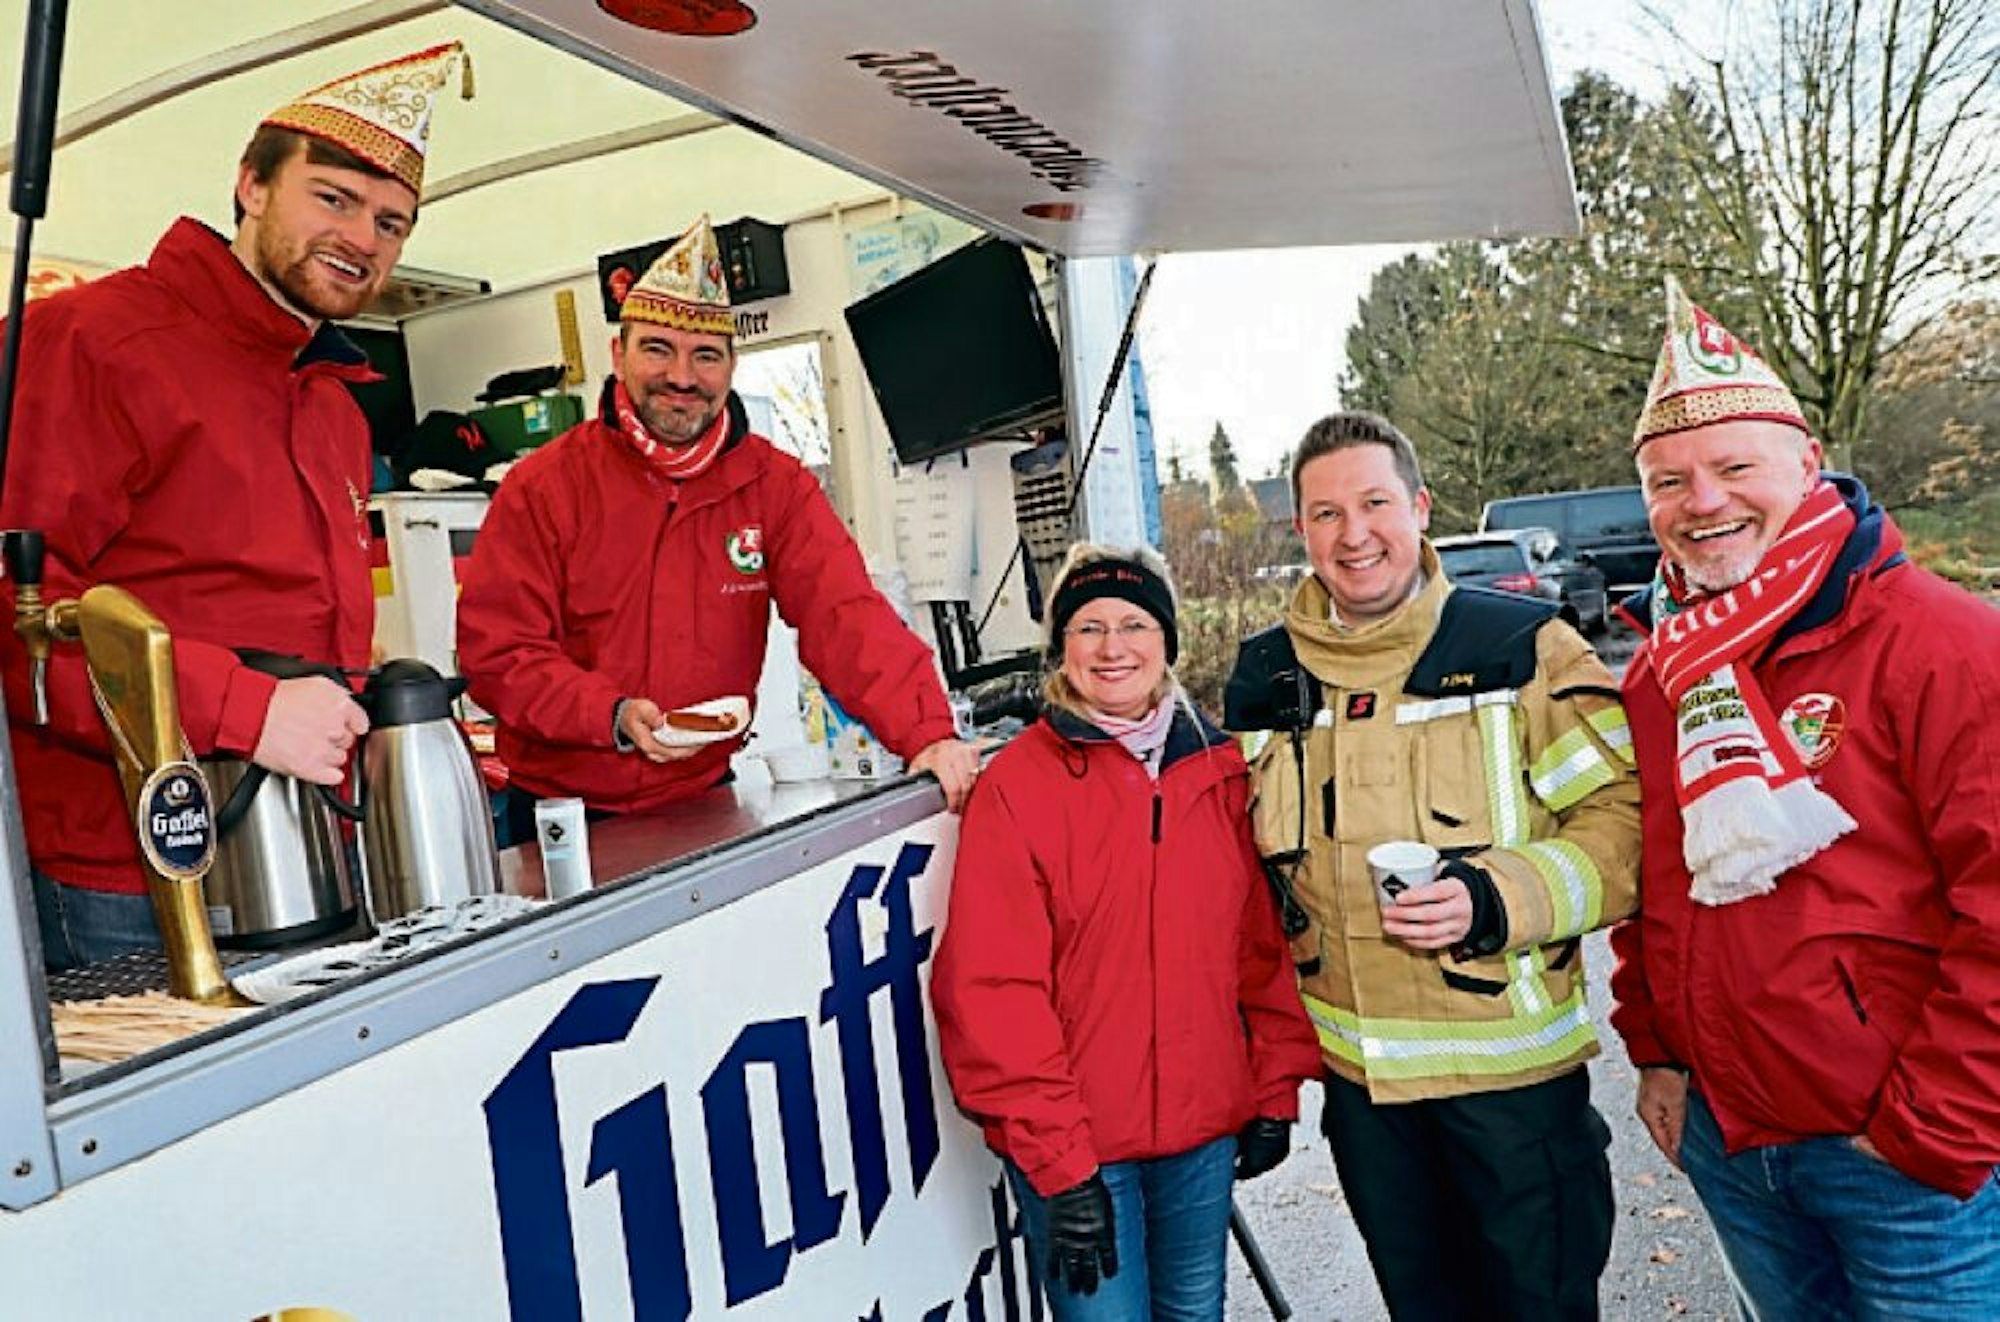 Kaffee und Würstchen bietet die Große Gladbacher KG mit ihrem designierten Dreigestirn um Vize-Feuerwehrchef Frank Haag (2.v.r.) an.